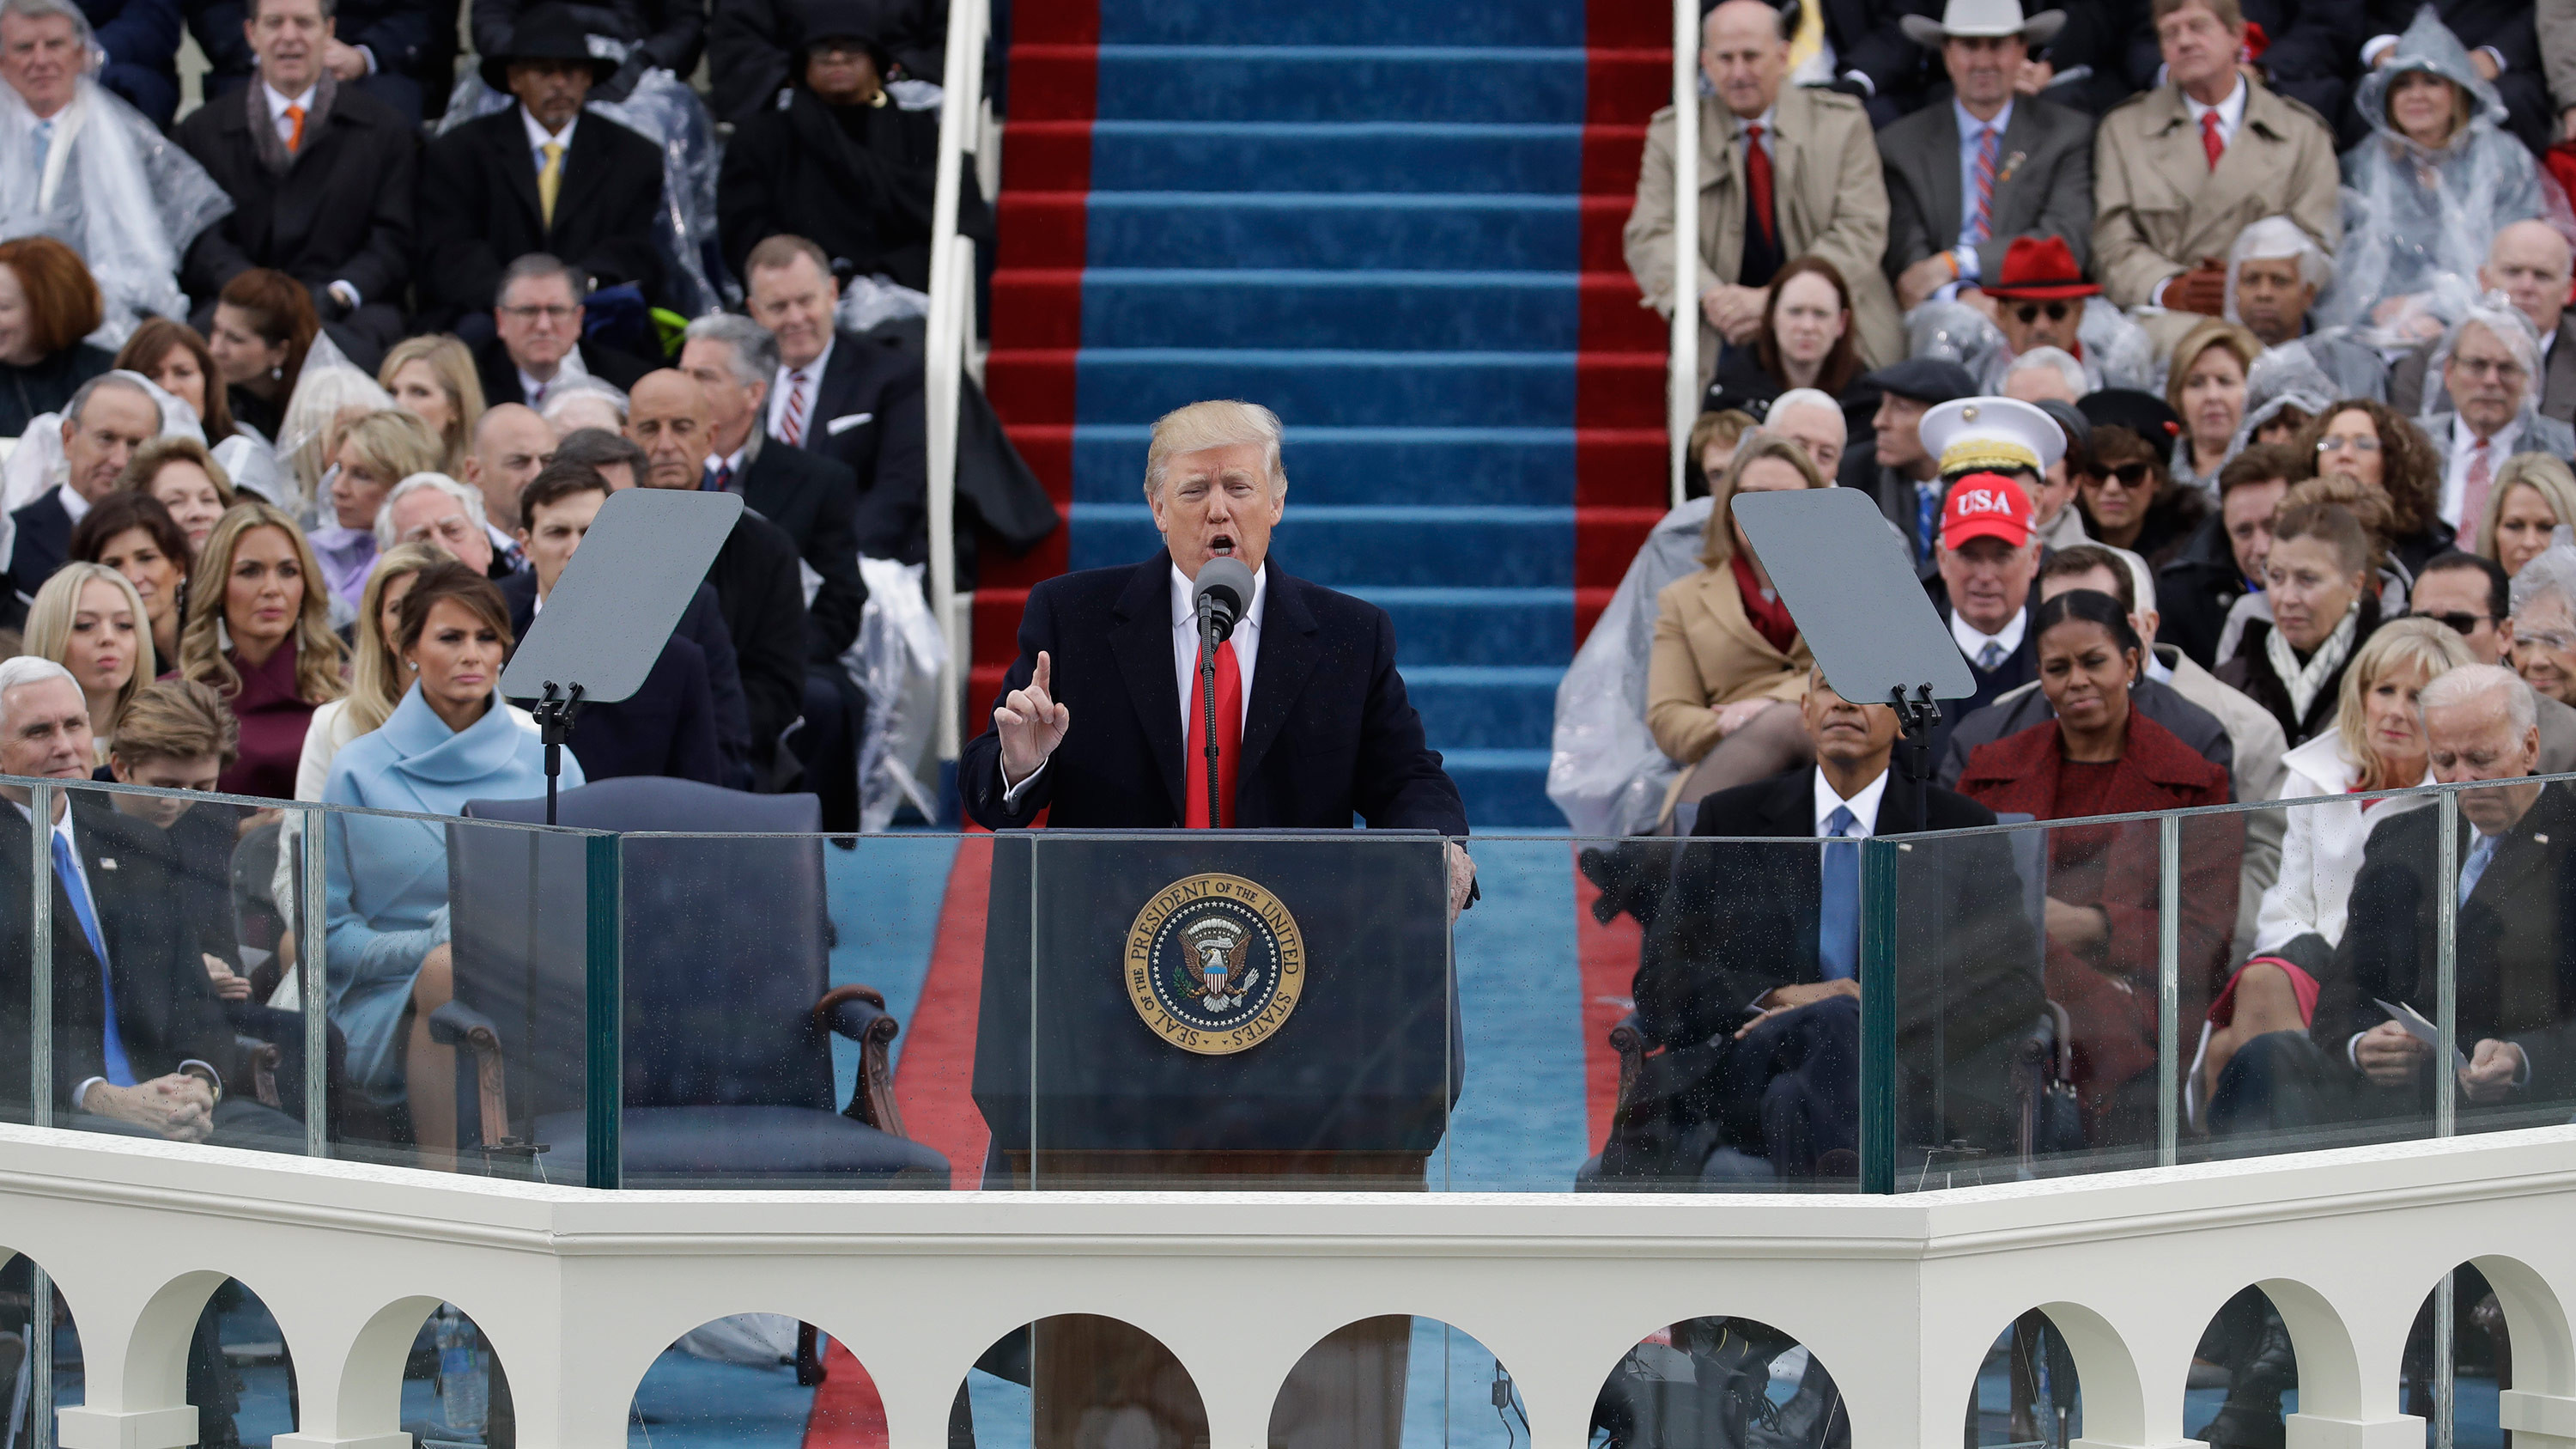 El presidente Donald Trump da su primer discurso como mandatario de Estados Unidos. (Crédito: Getty Images)